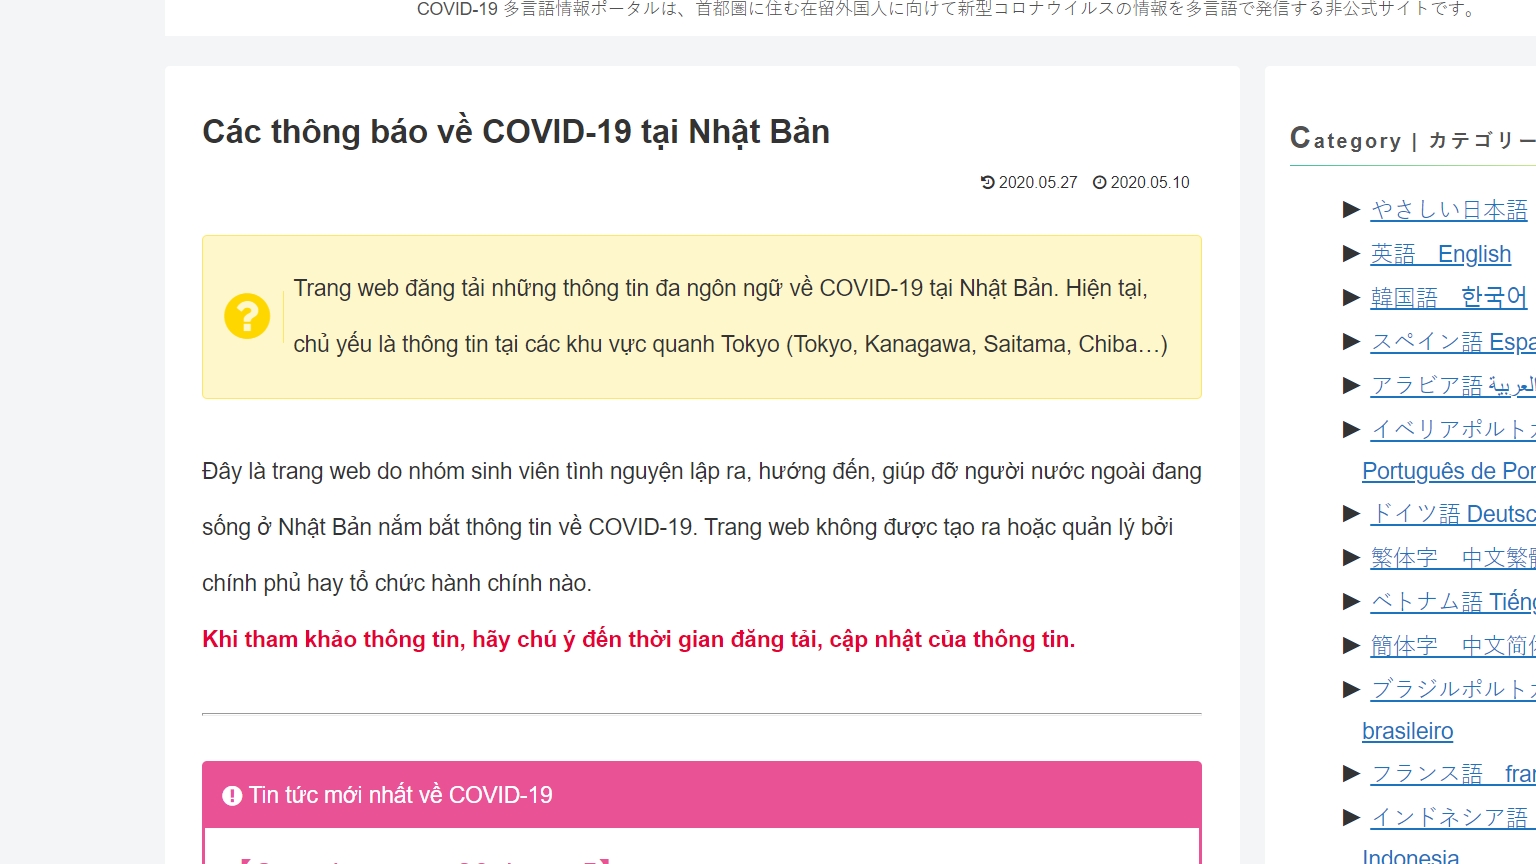 Ra mắt website hỗ trợ người nước ngoài về COVID-19 của nhóm sinh viên Việt Nam tại Nhật Bản